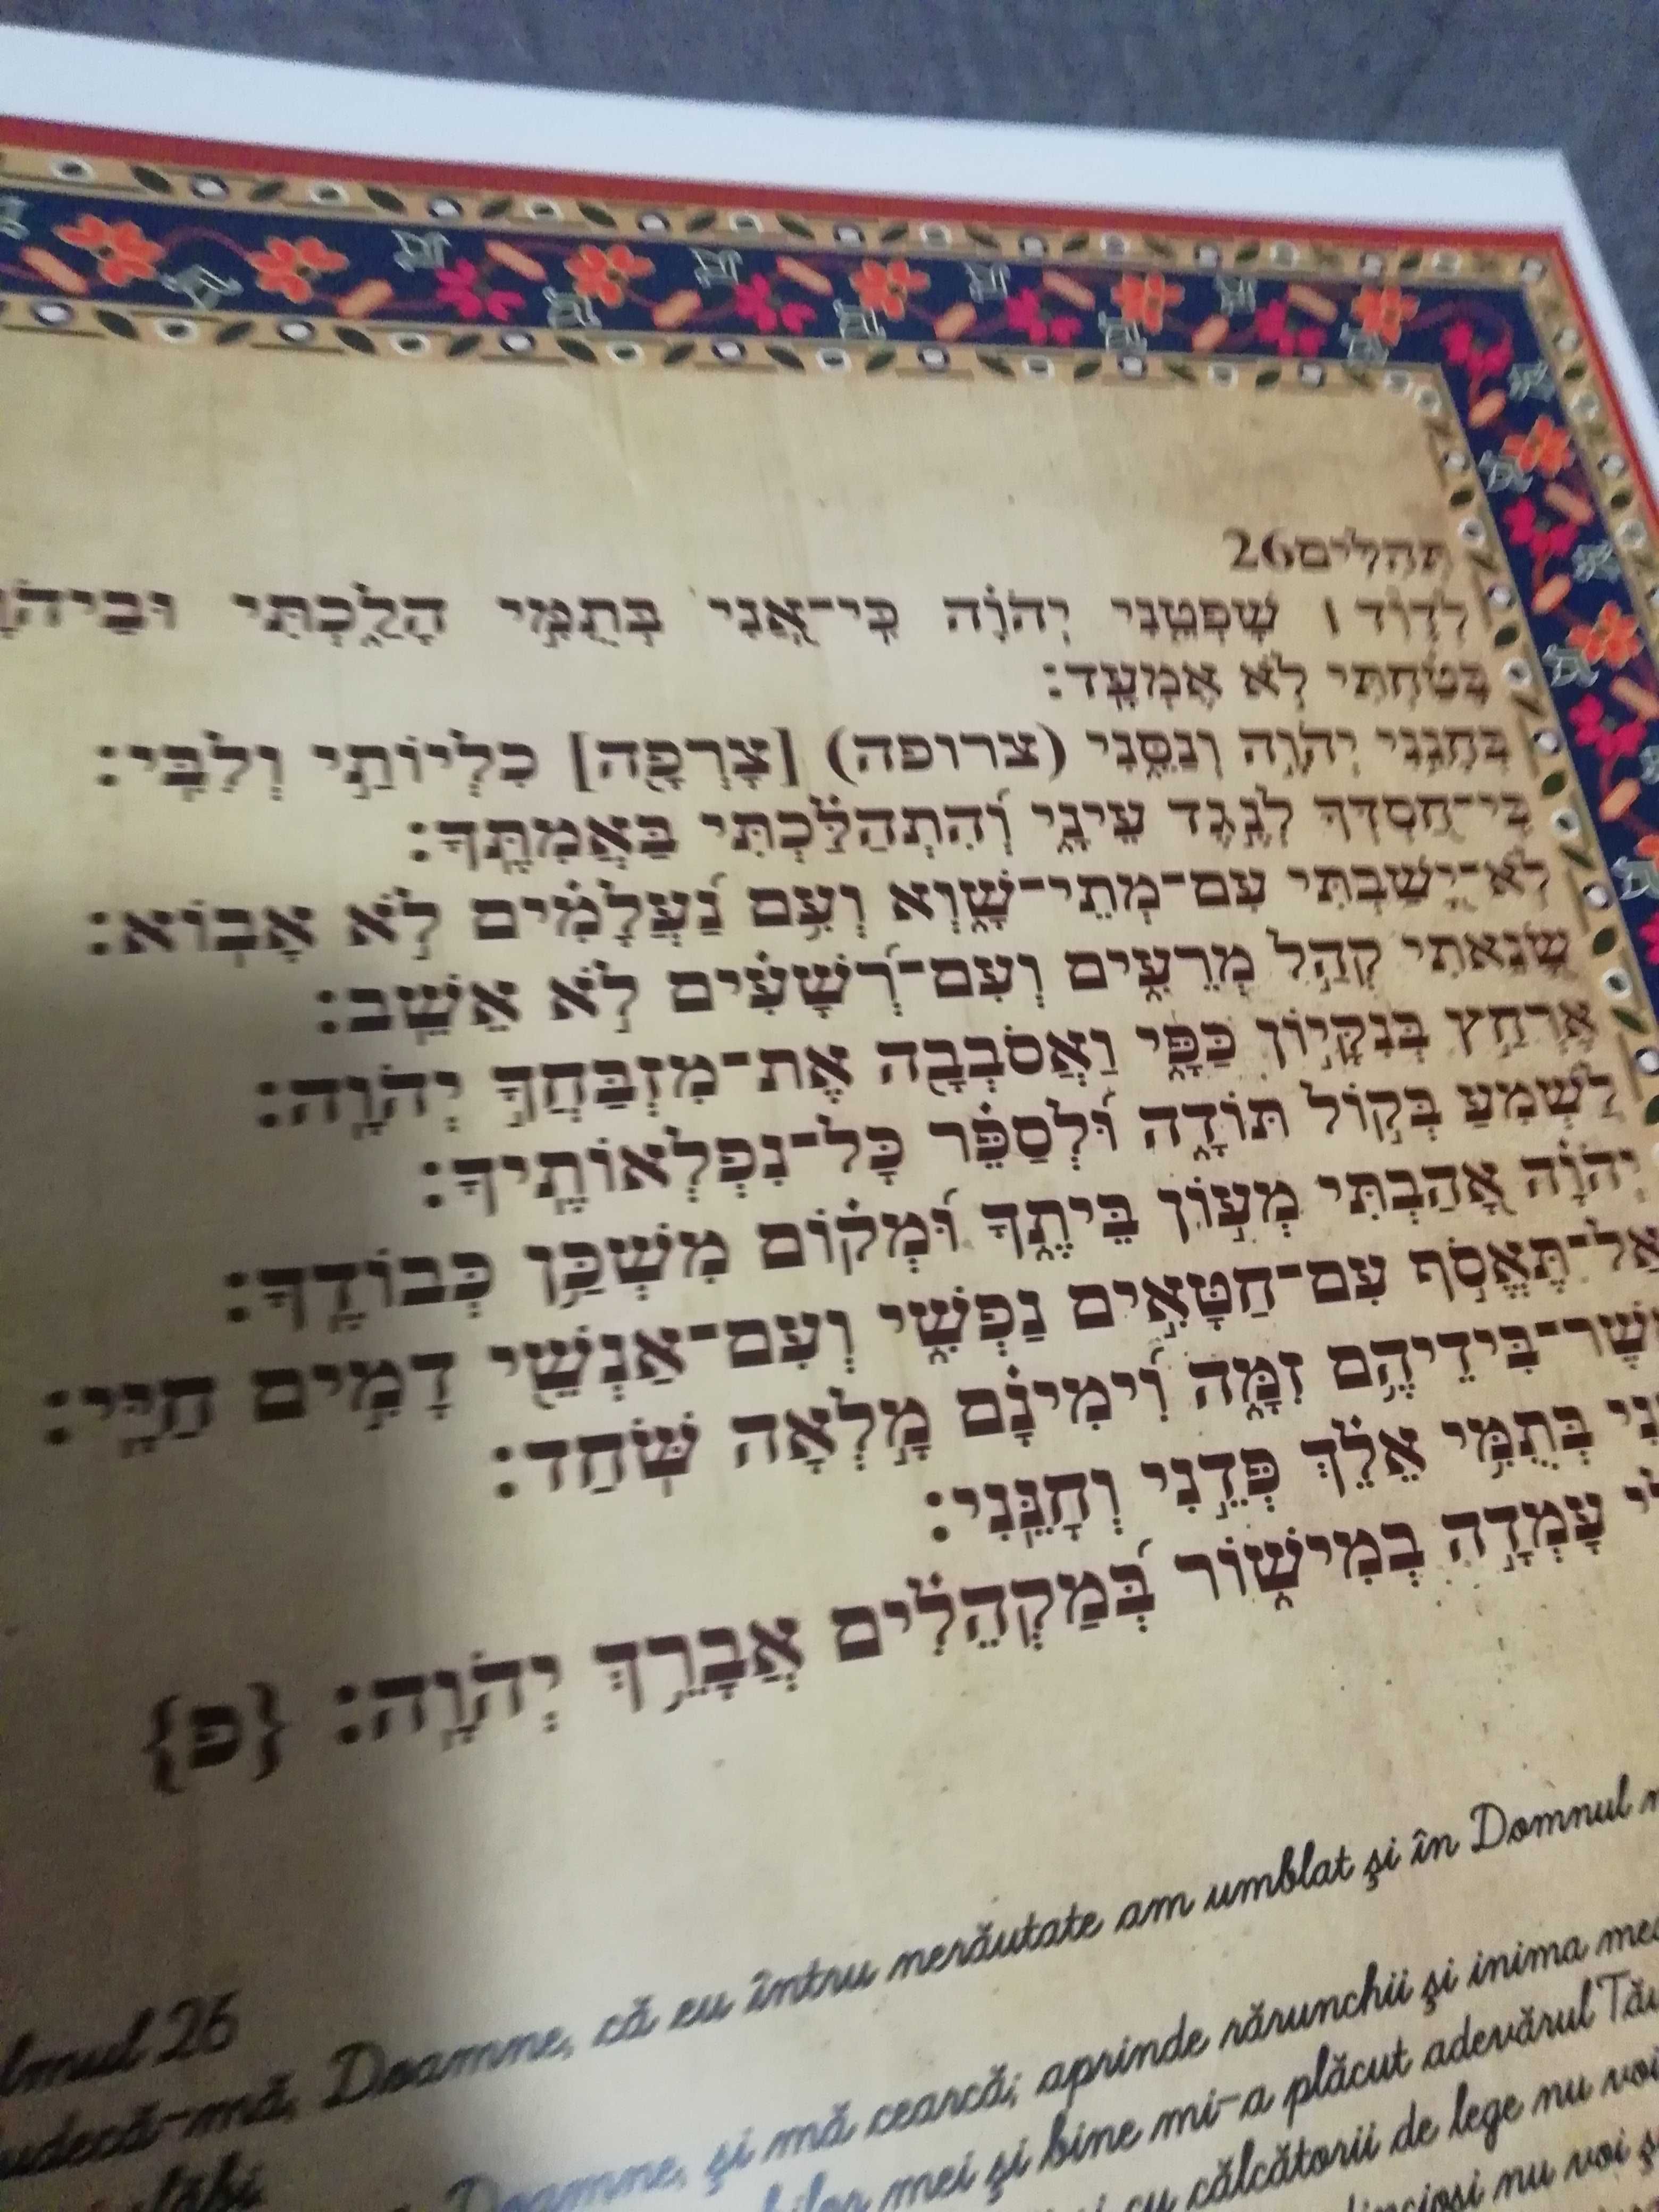 Psalmul  26 in limba romana si ebraica, decor spiritual perete